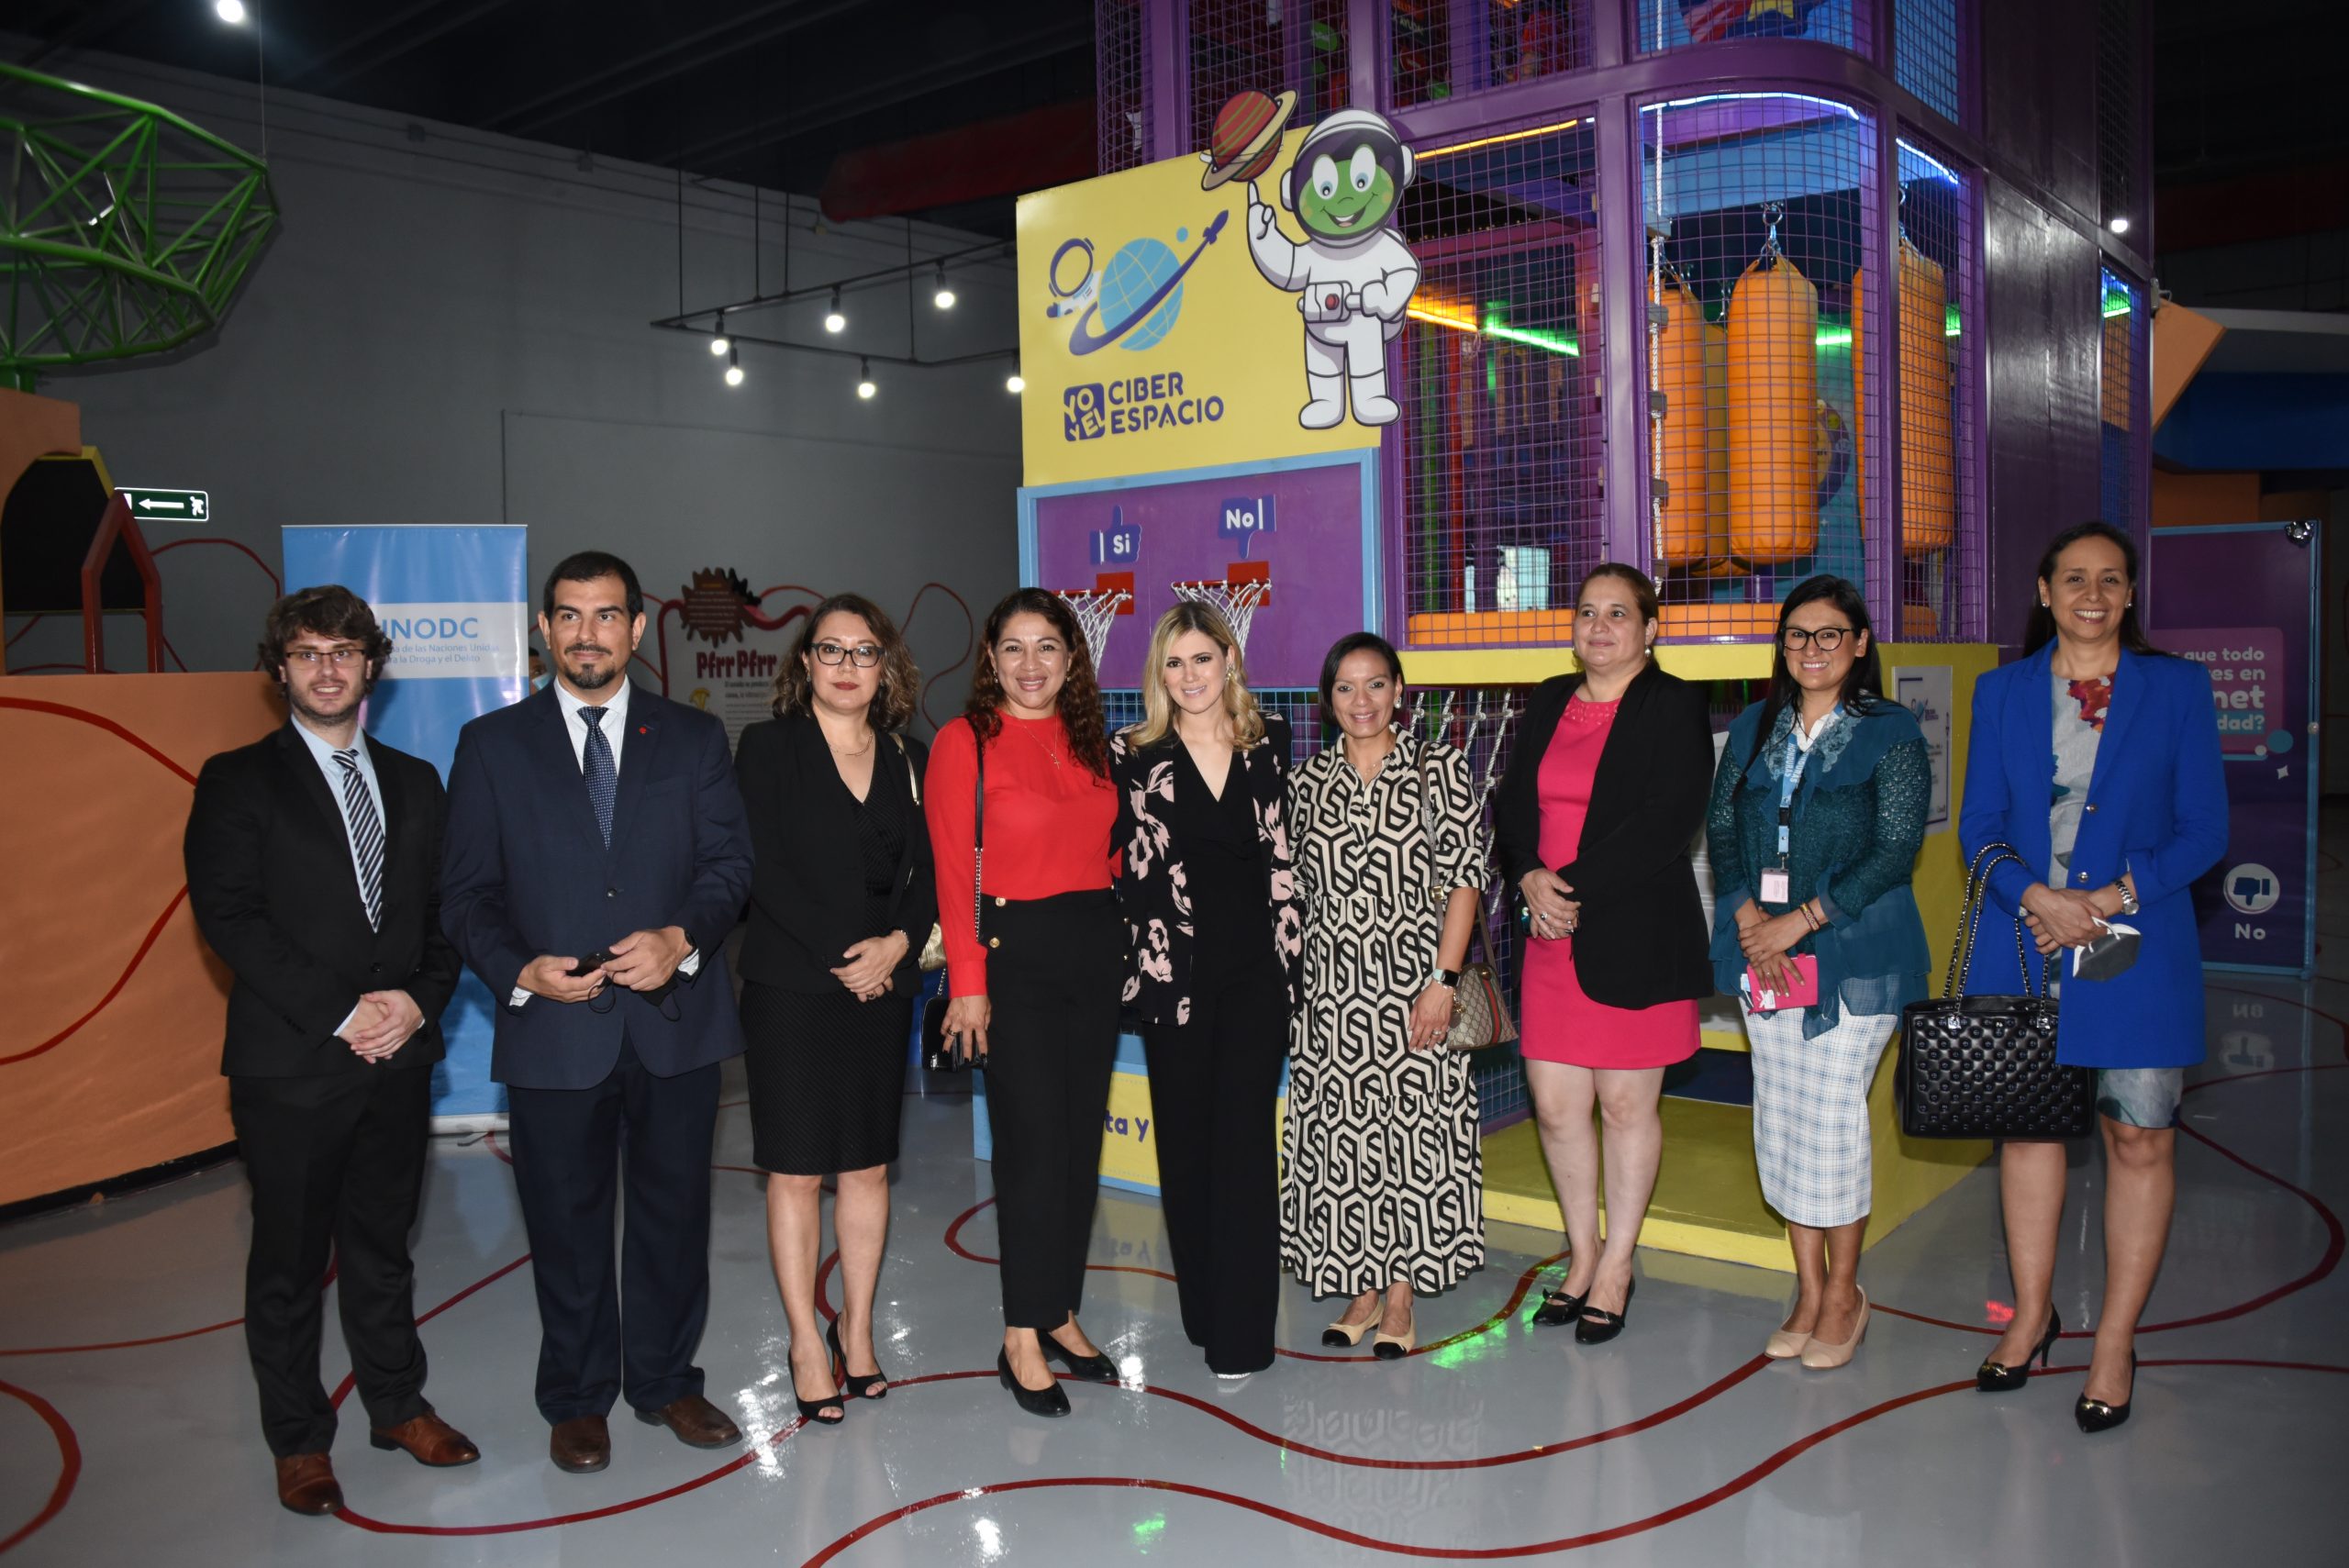 Museo Chiminike y UNODC inauguran la exhibición “Yo y el Ciberespacio”